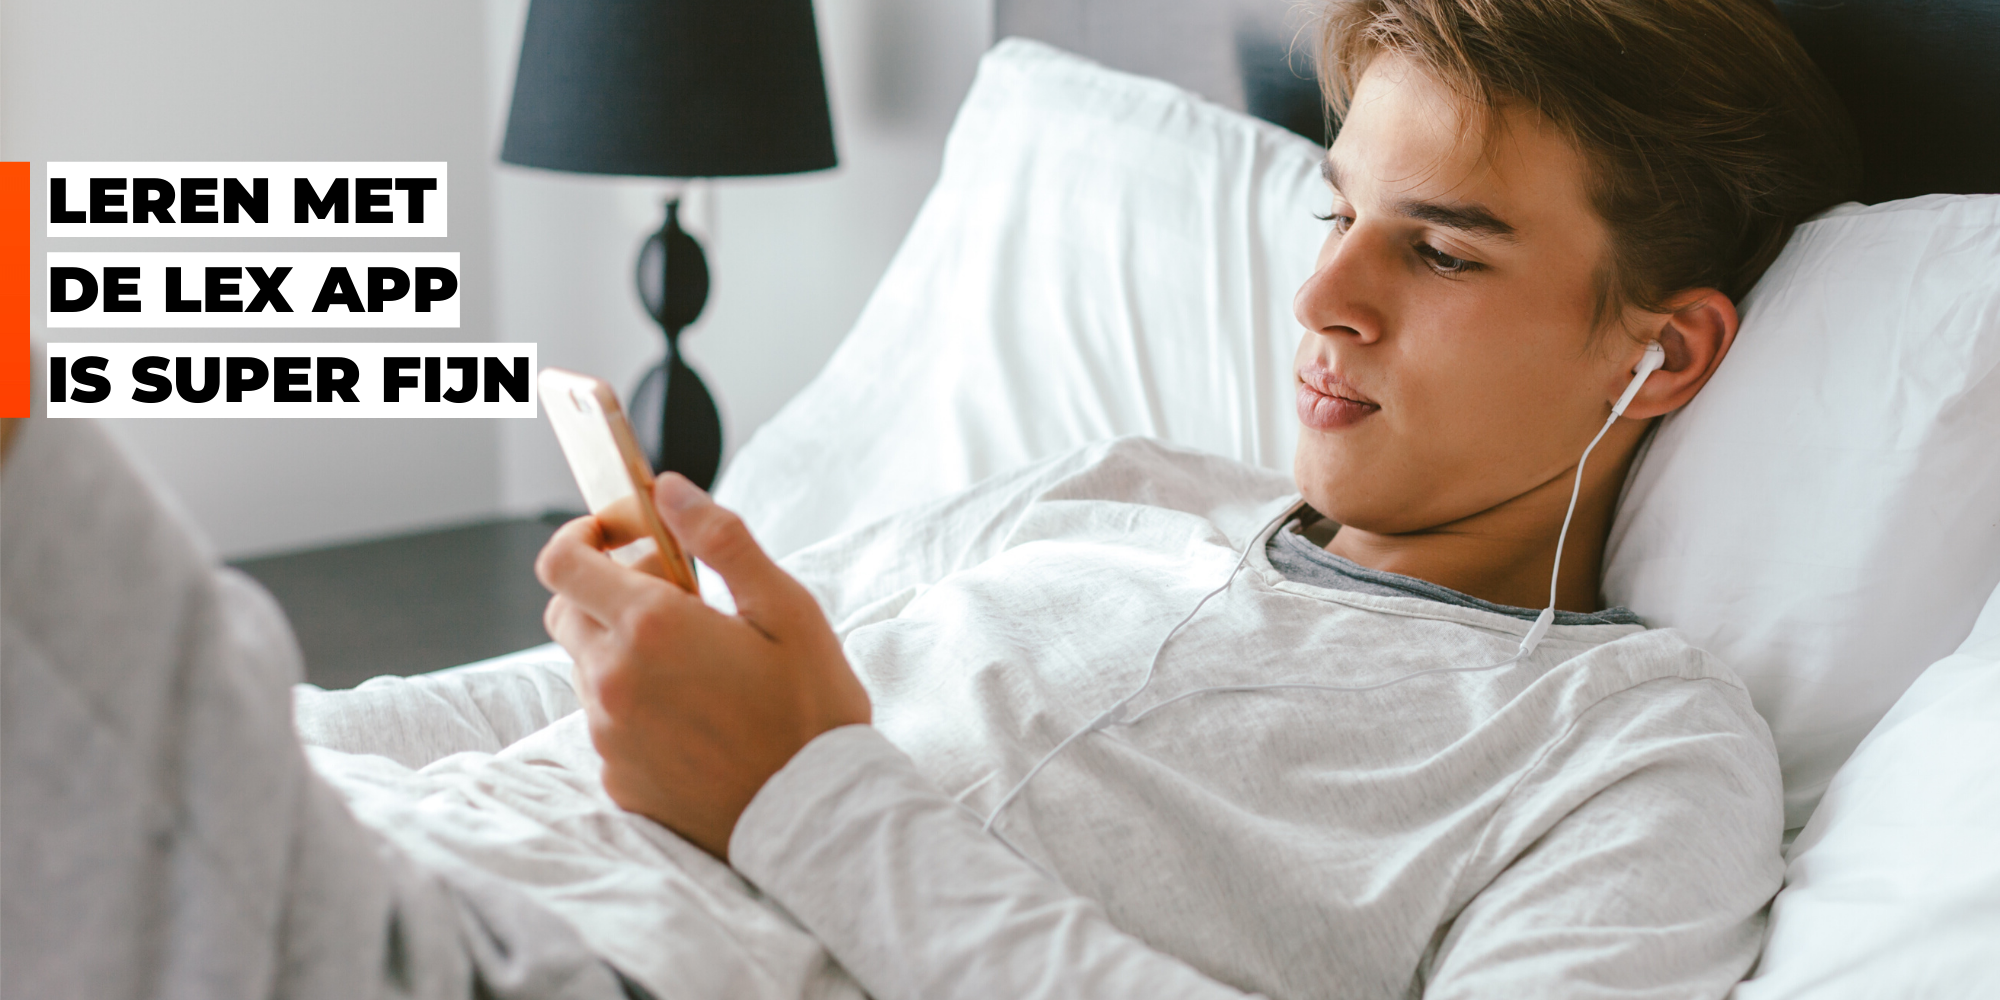 Jongen ligt op bed en luistert met oortjes in naar zijn smartphone. Tekst: 'Leren met de LEX-app is super fijn'